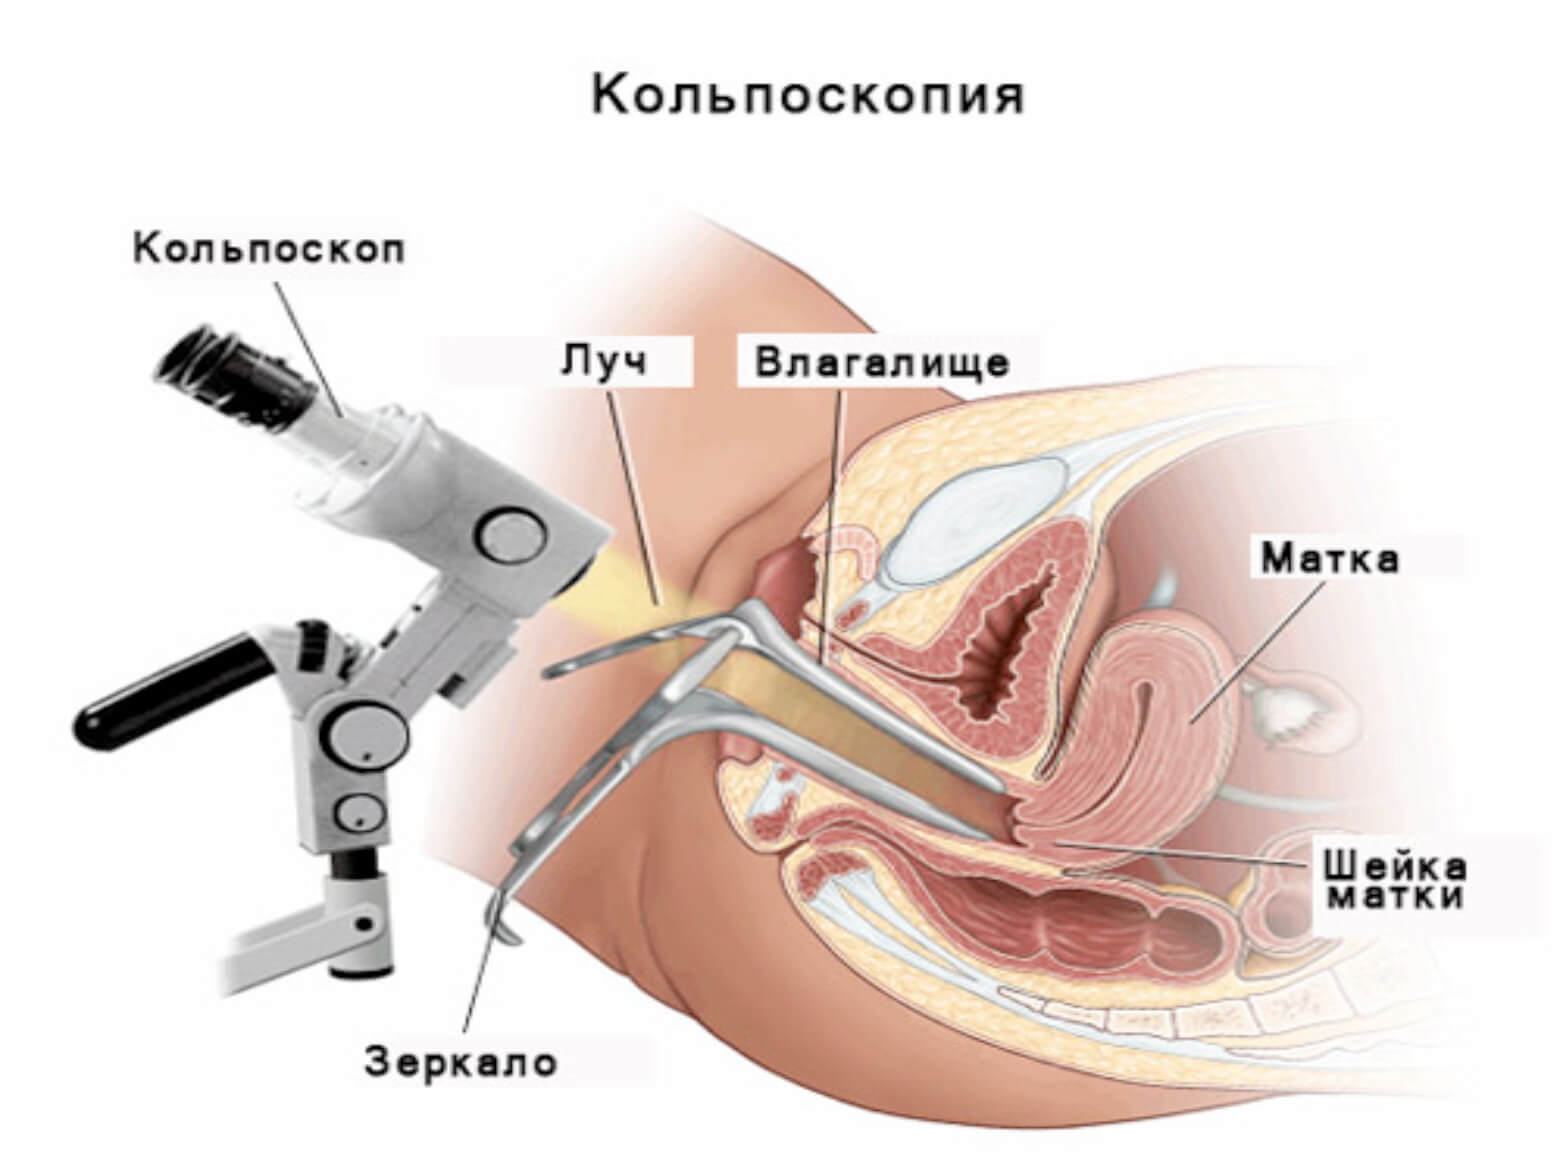 Кольпоскопия шейки матки — особенности процедуры